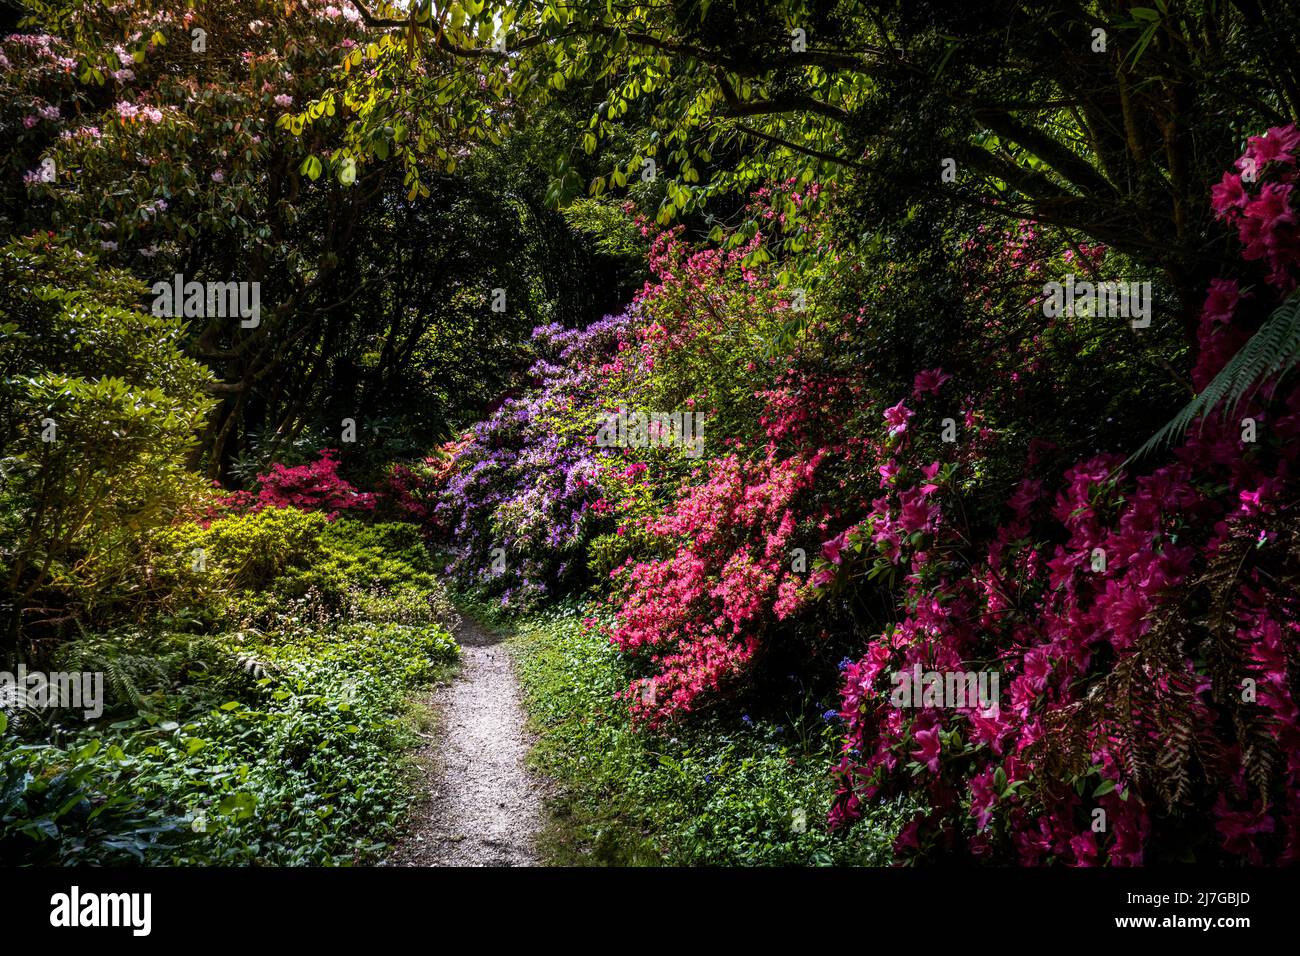 Arbusti Azalea in fiore che crescono accanto a un sentiero nel selvaggio giardino subtropicale Penjjick in Cornovaglia.; Penjerrick Garden è riconosciuto come Cornovaglia Foto Stock